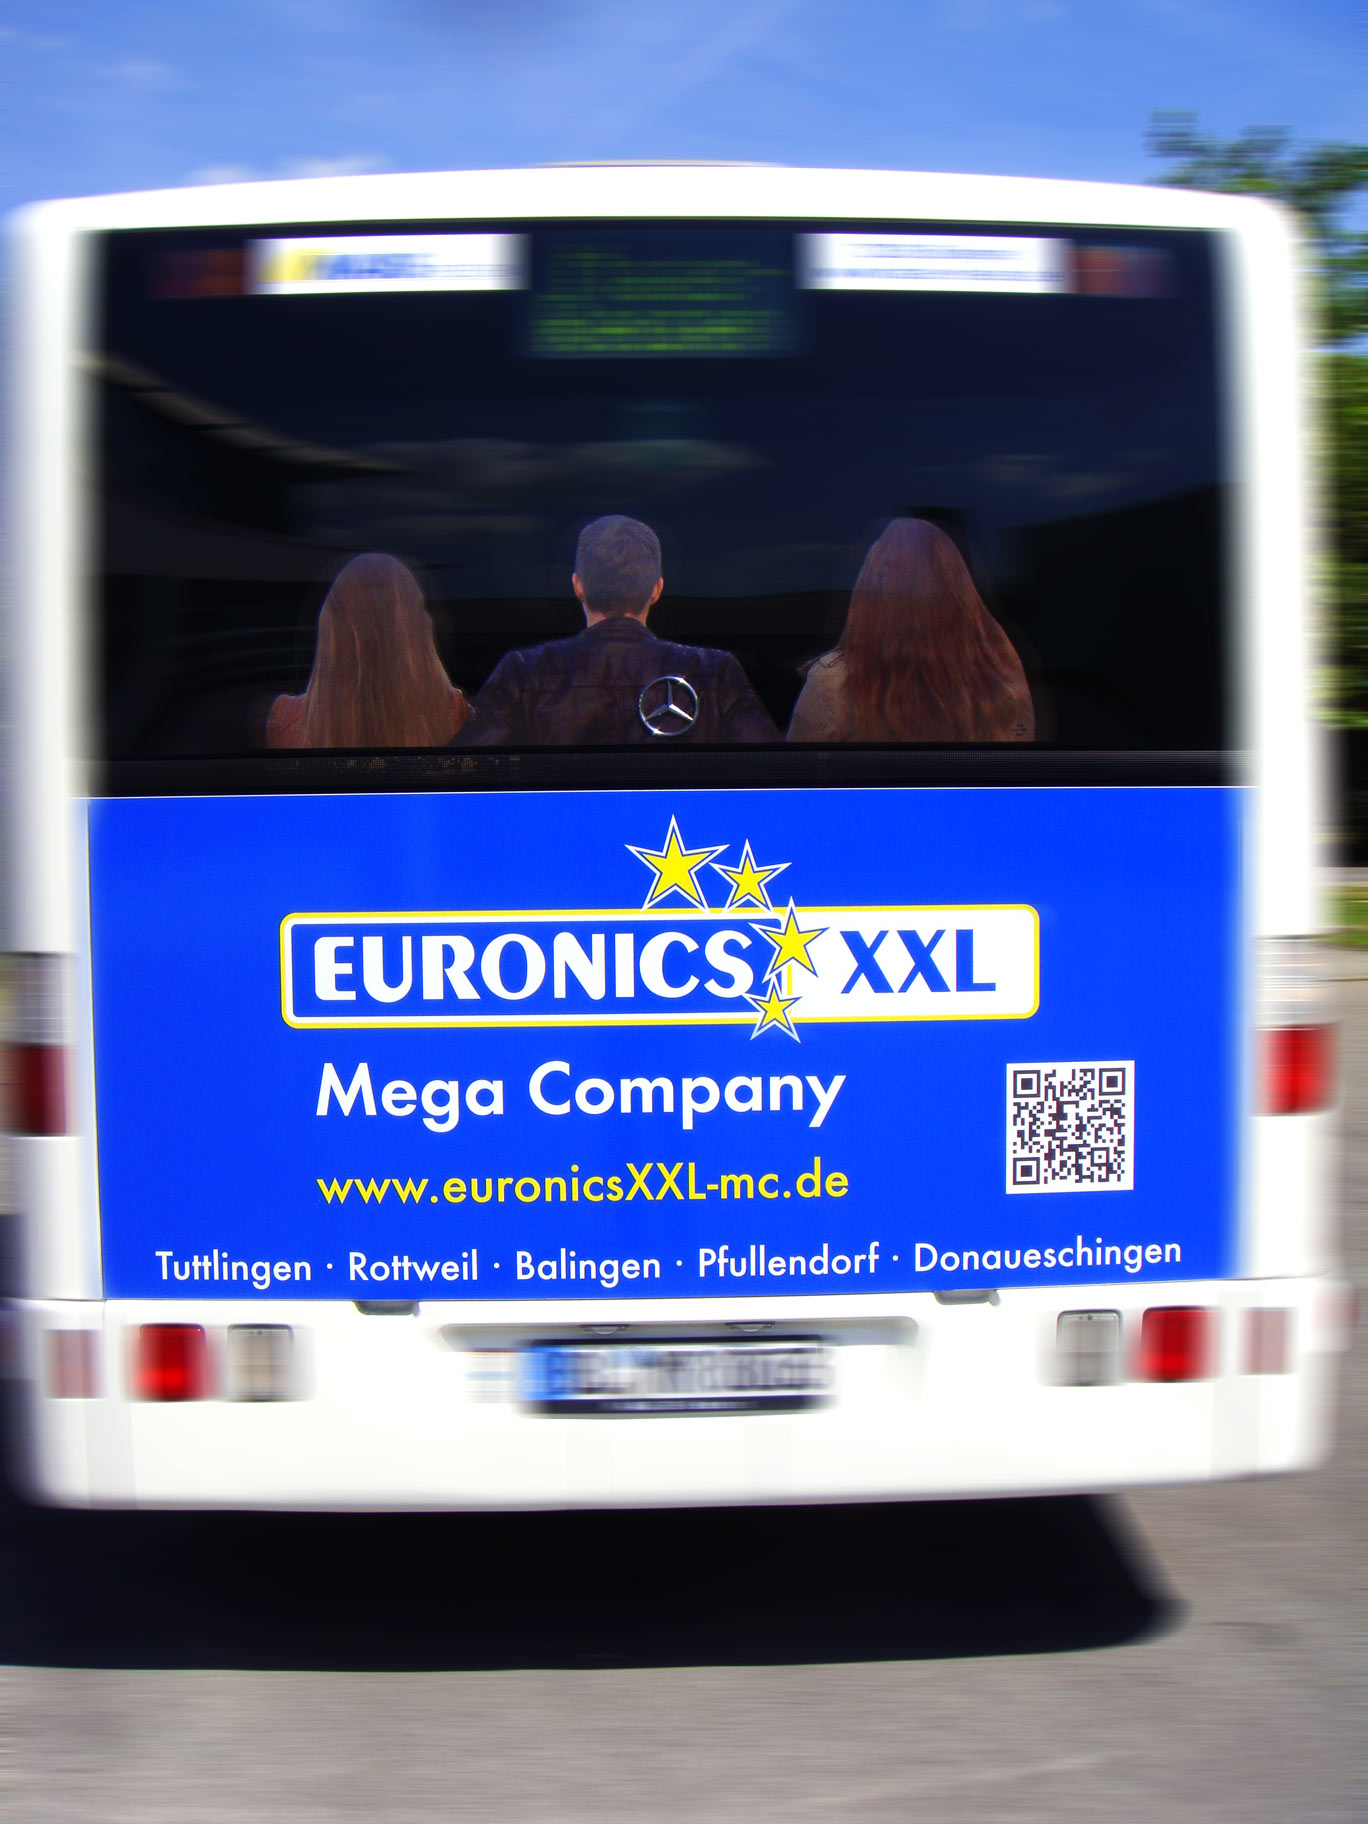 Buswerbung - Euronics - Heckseite